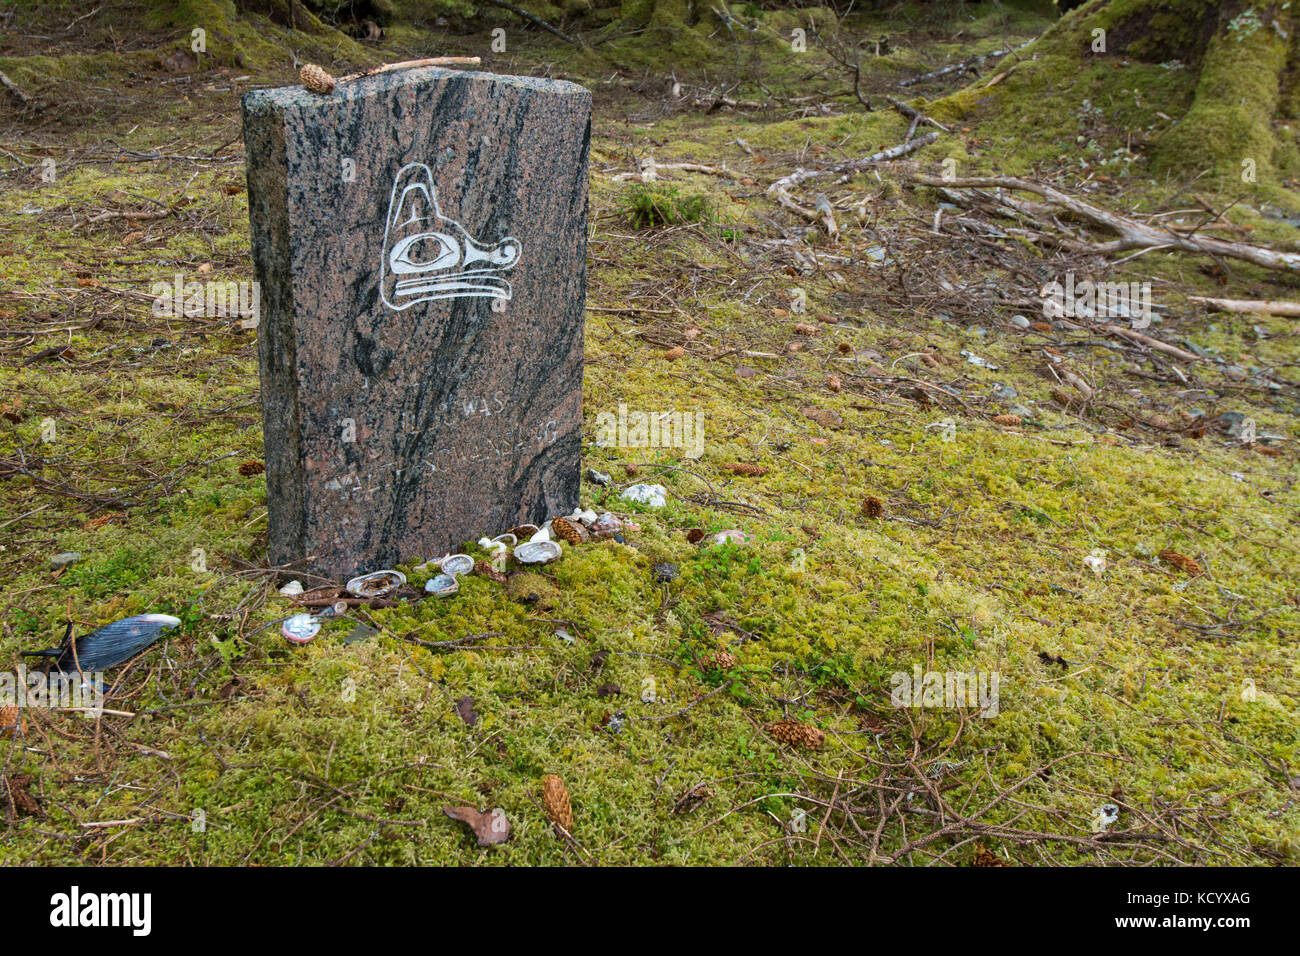 Bill Reid lieu de repos, d'une pierre tombale, Tanu, Gwaii Haanas, Réserve de parc national et site du patrimoine haïda, Haida Gwaii, anciennement connu sous le nom de Queen Charlotte Islands, British Columbia, Canada Banque D'Images